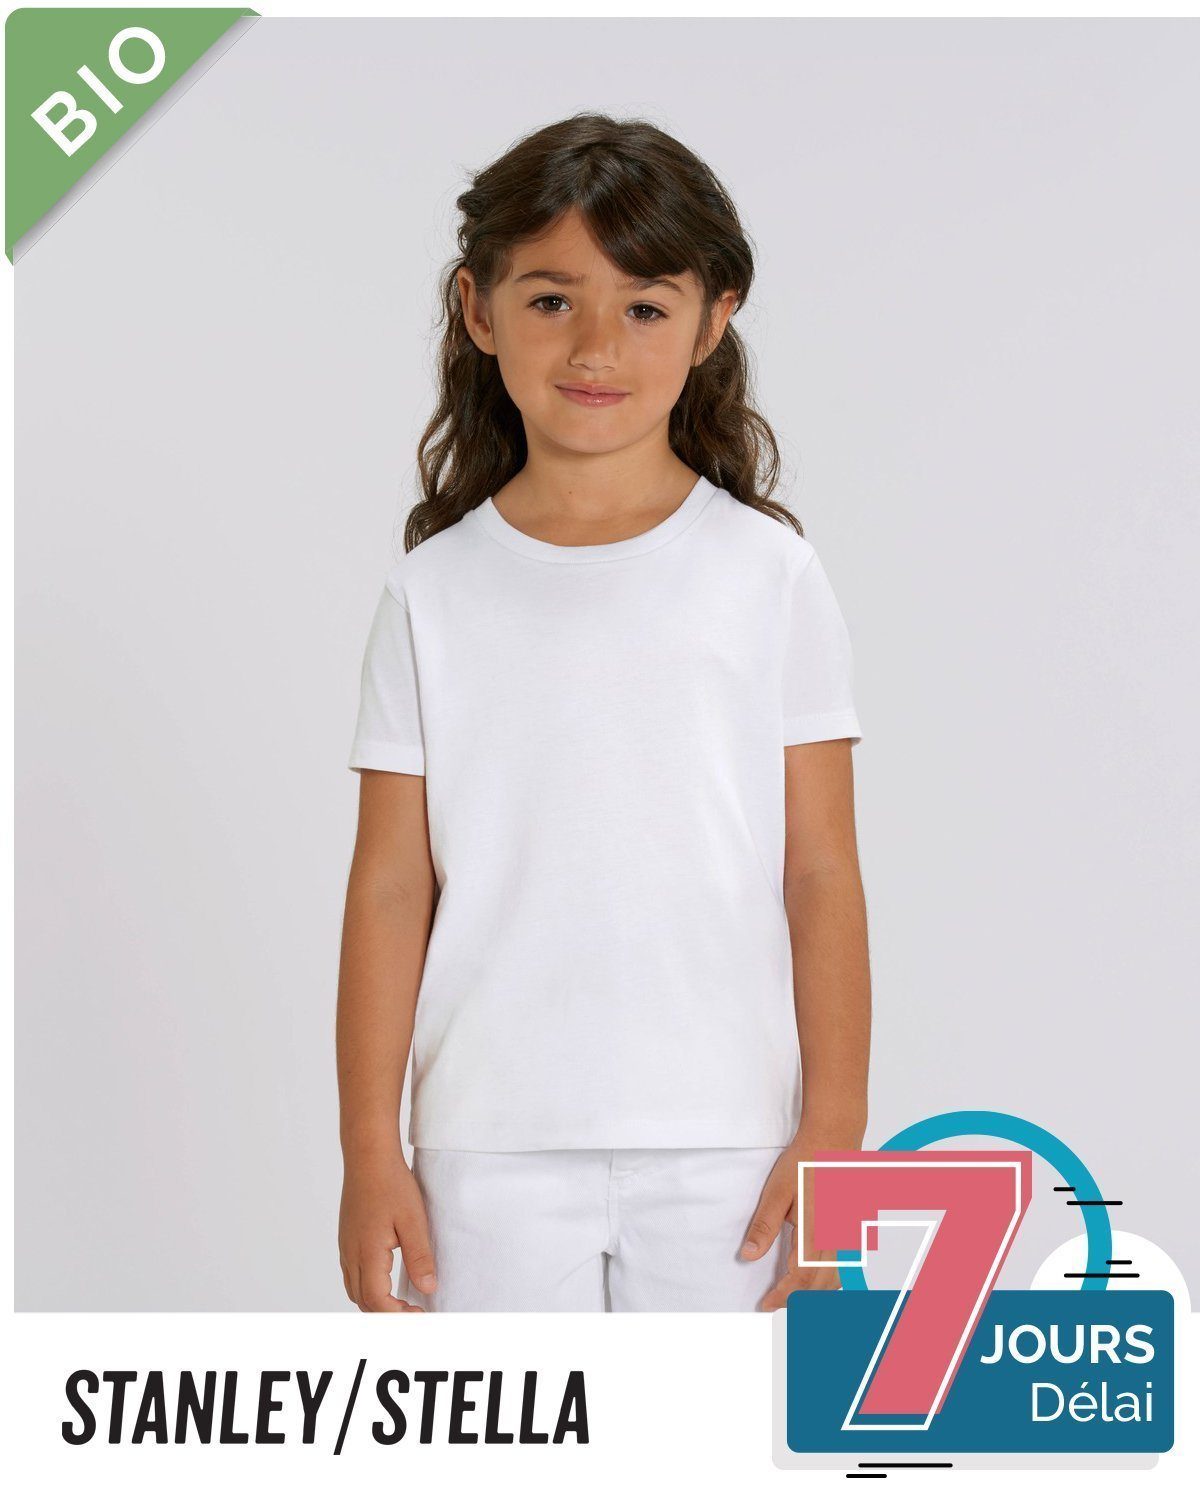 Acheter Tee-shirt thermique enfant Blanc ? Bon et bon marché